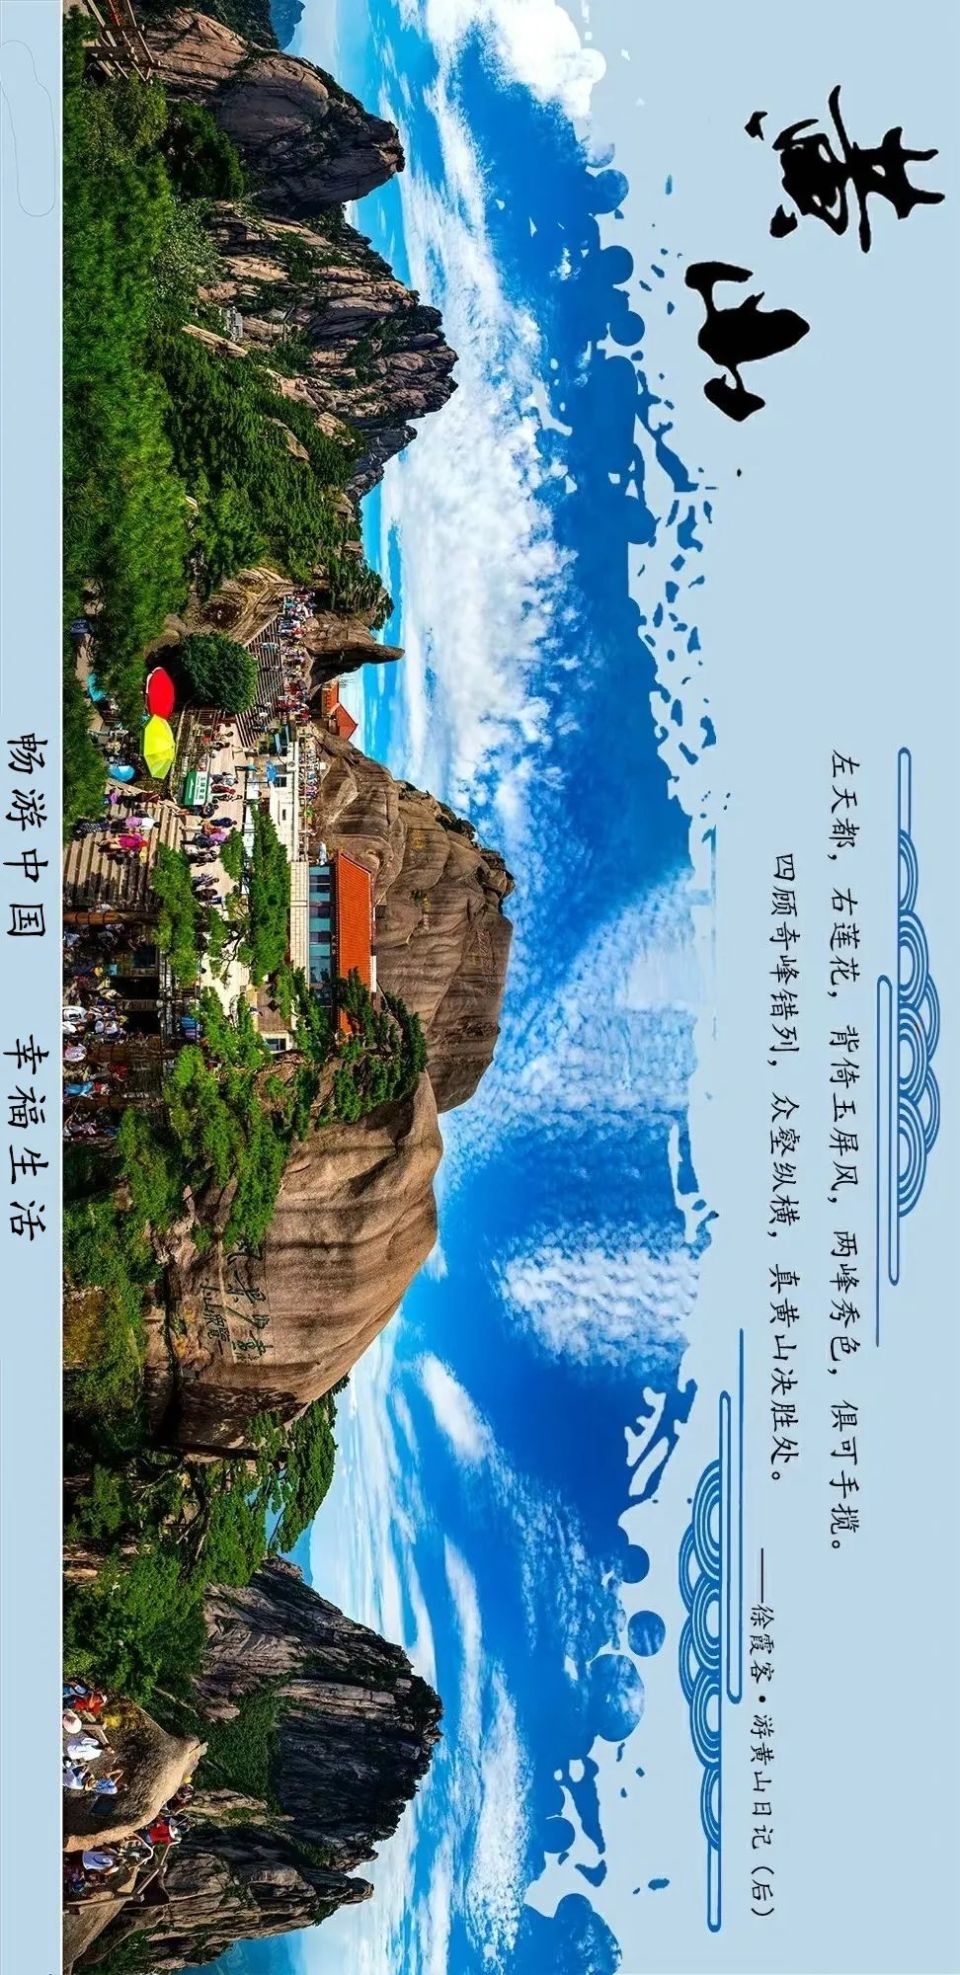 中国旅游日,跟着游圣徐霞客游黄山